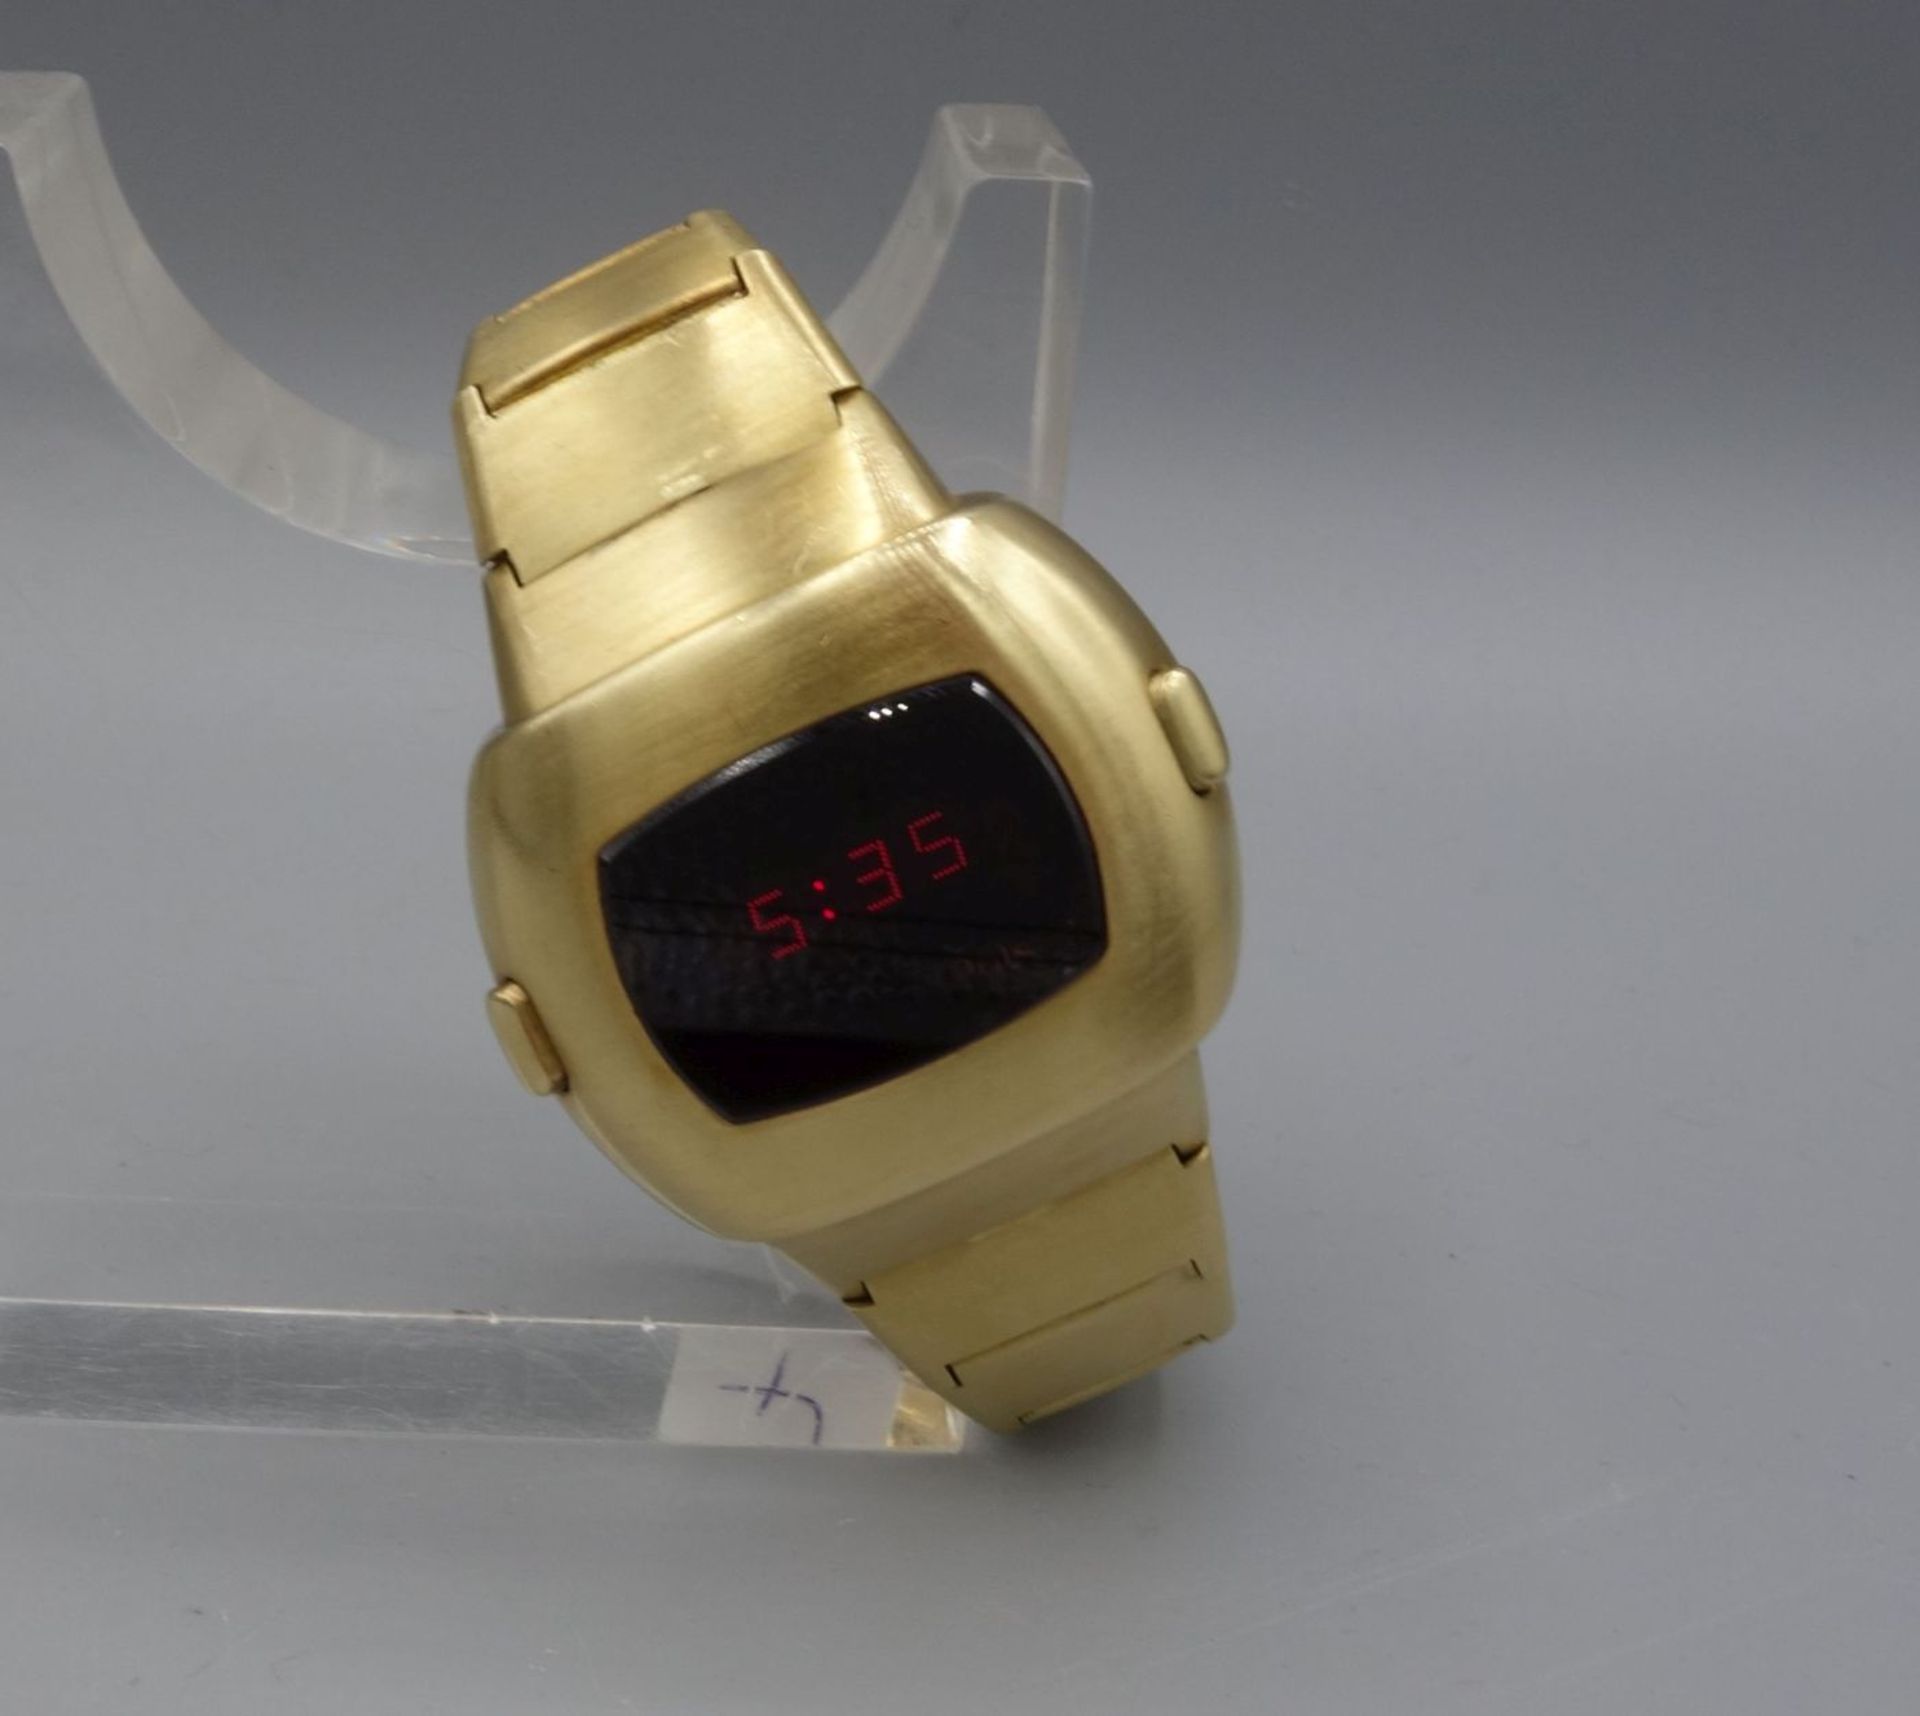 GOLDENE ARMBANDUHR / DIGITALUHR : Pulsar P3 "Date Command" / digital watch, 1970er Jahre, Gehäuse